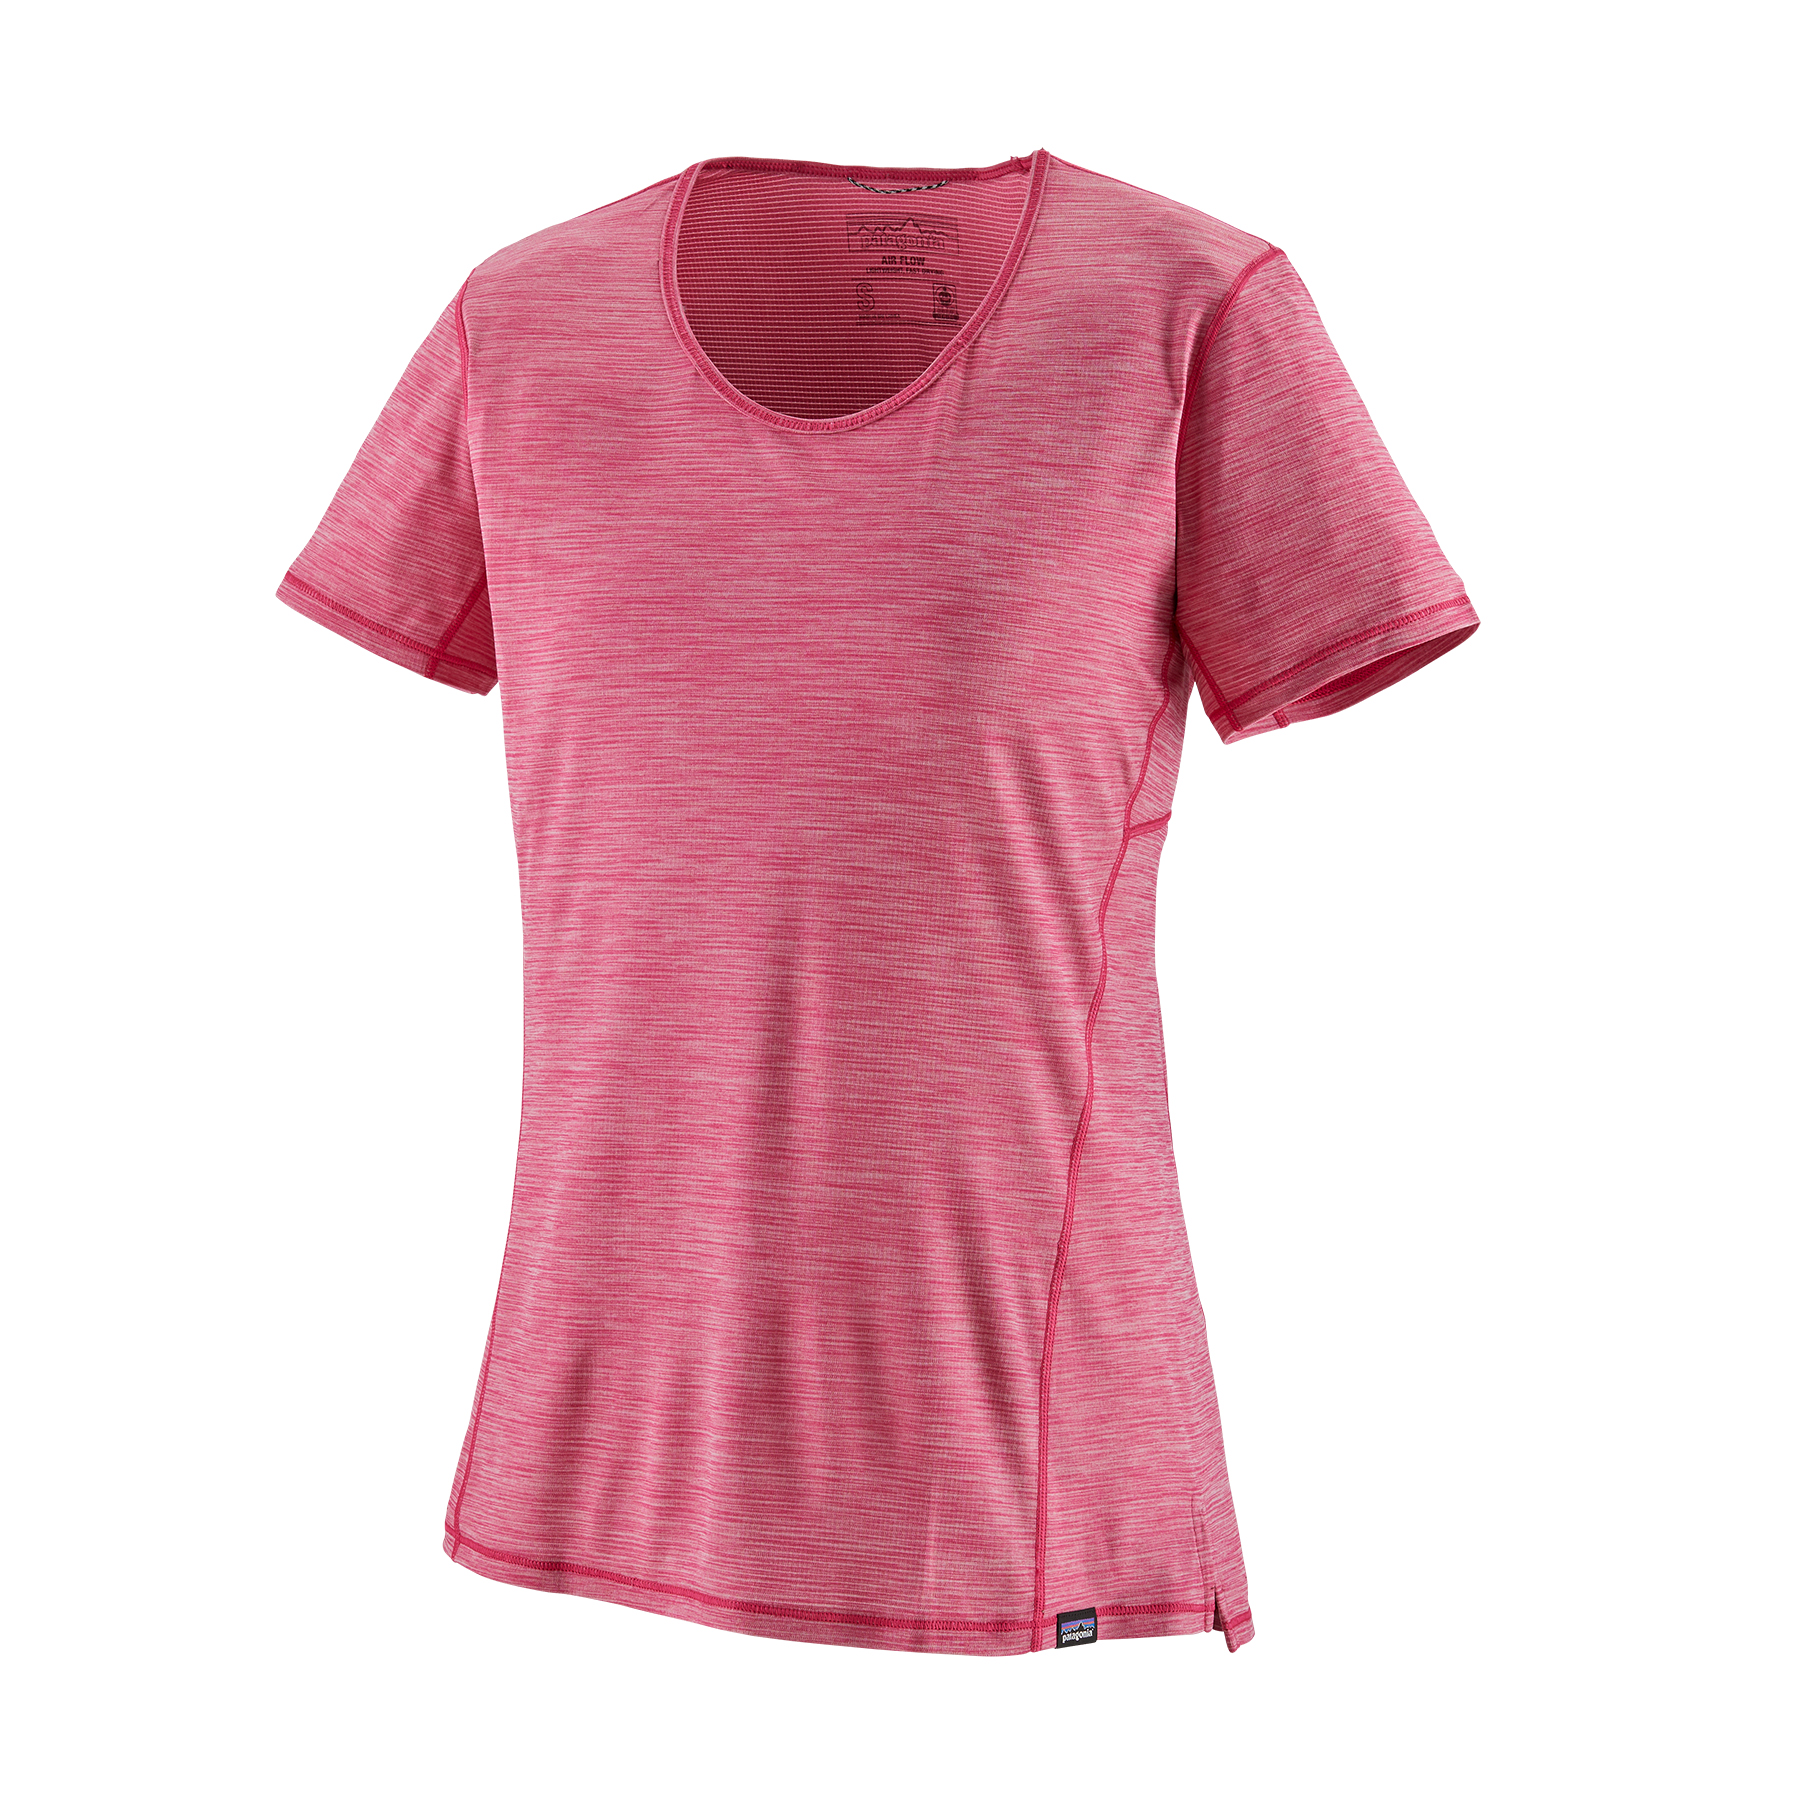 PATAGONIA Women's Capilene® Cool Lightweight Shirt Star Pink - Light Star Pink X-Dye